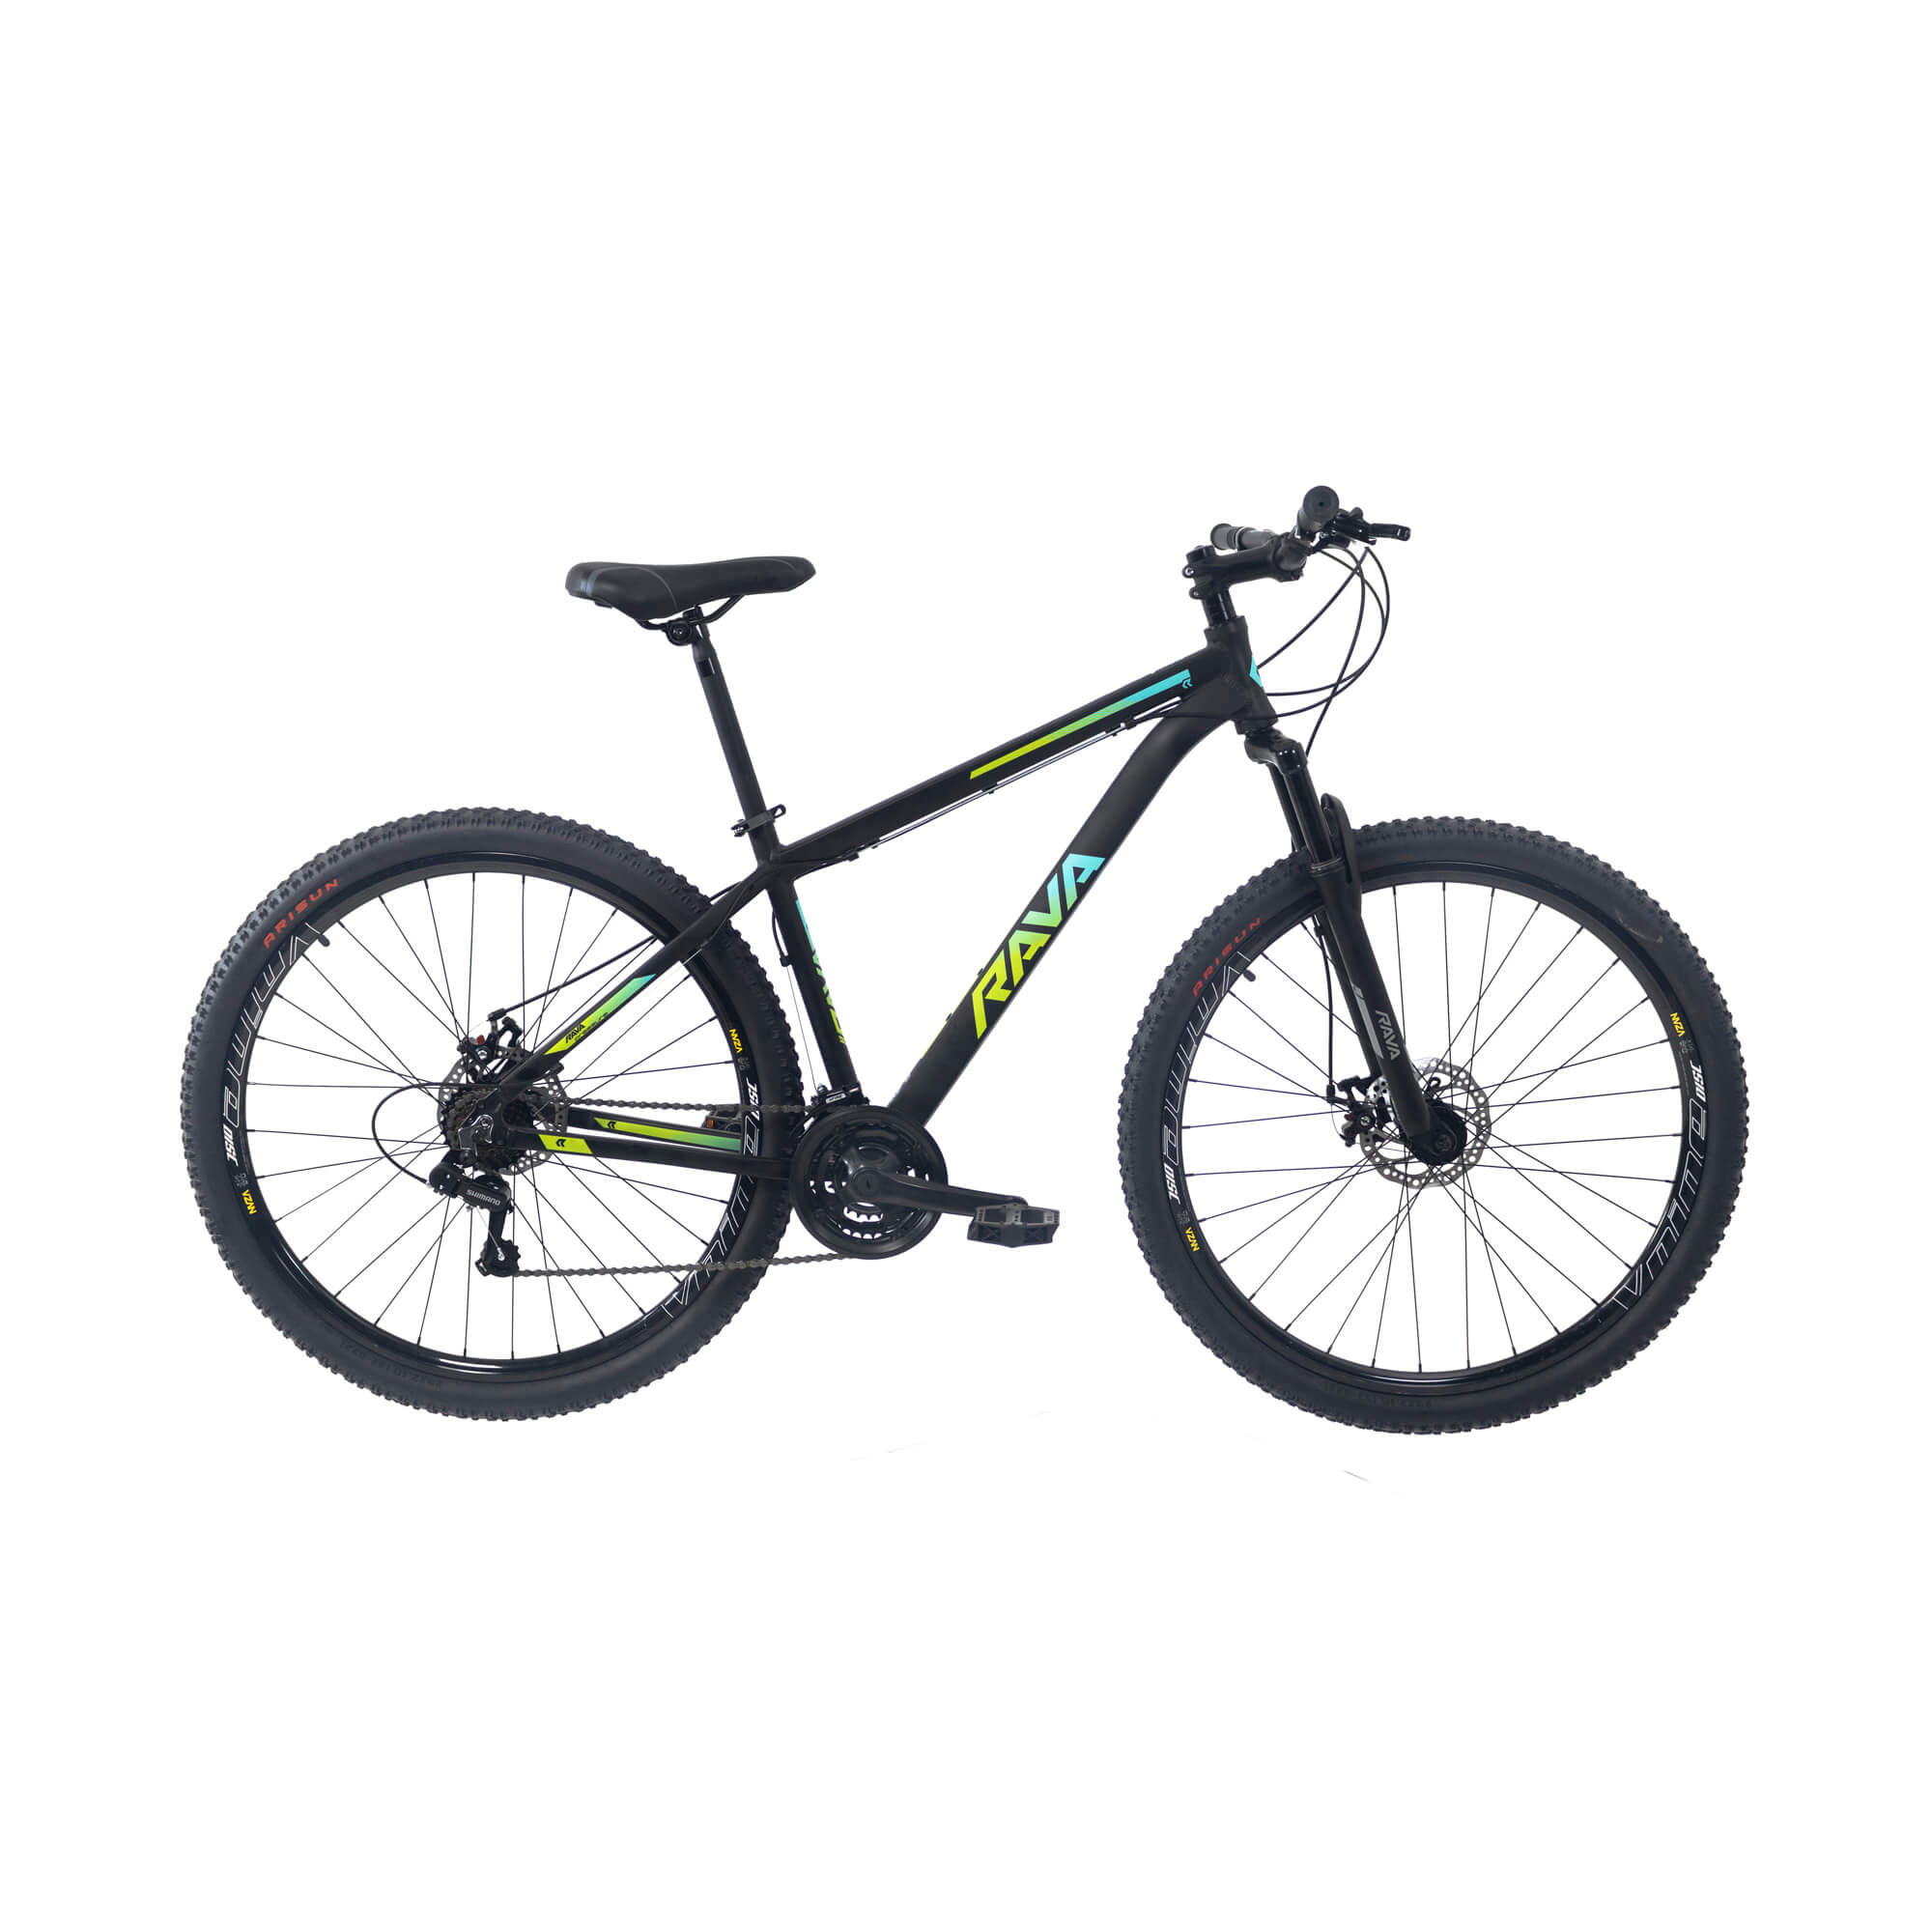 Bicicleta Rava Pressure 2019/2020 | 21 v. - Preto/Verde/Azul, 15.5"